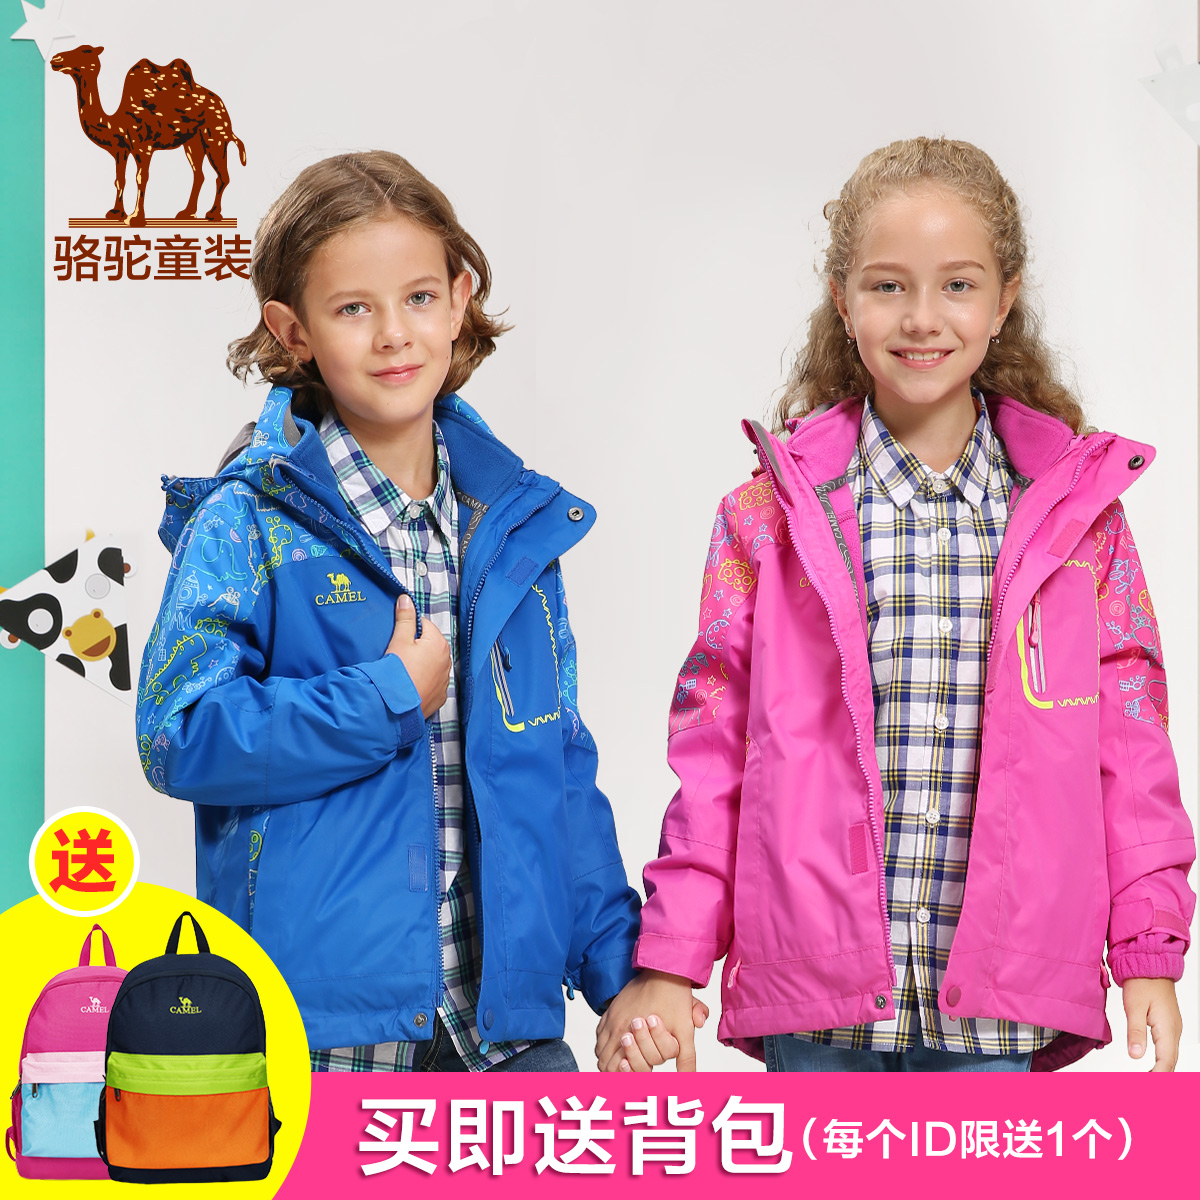 【热销3千件】小骆驼2016儿童冬装外套男女两件三合一户外冲锋衣